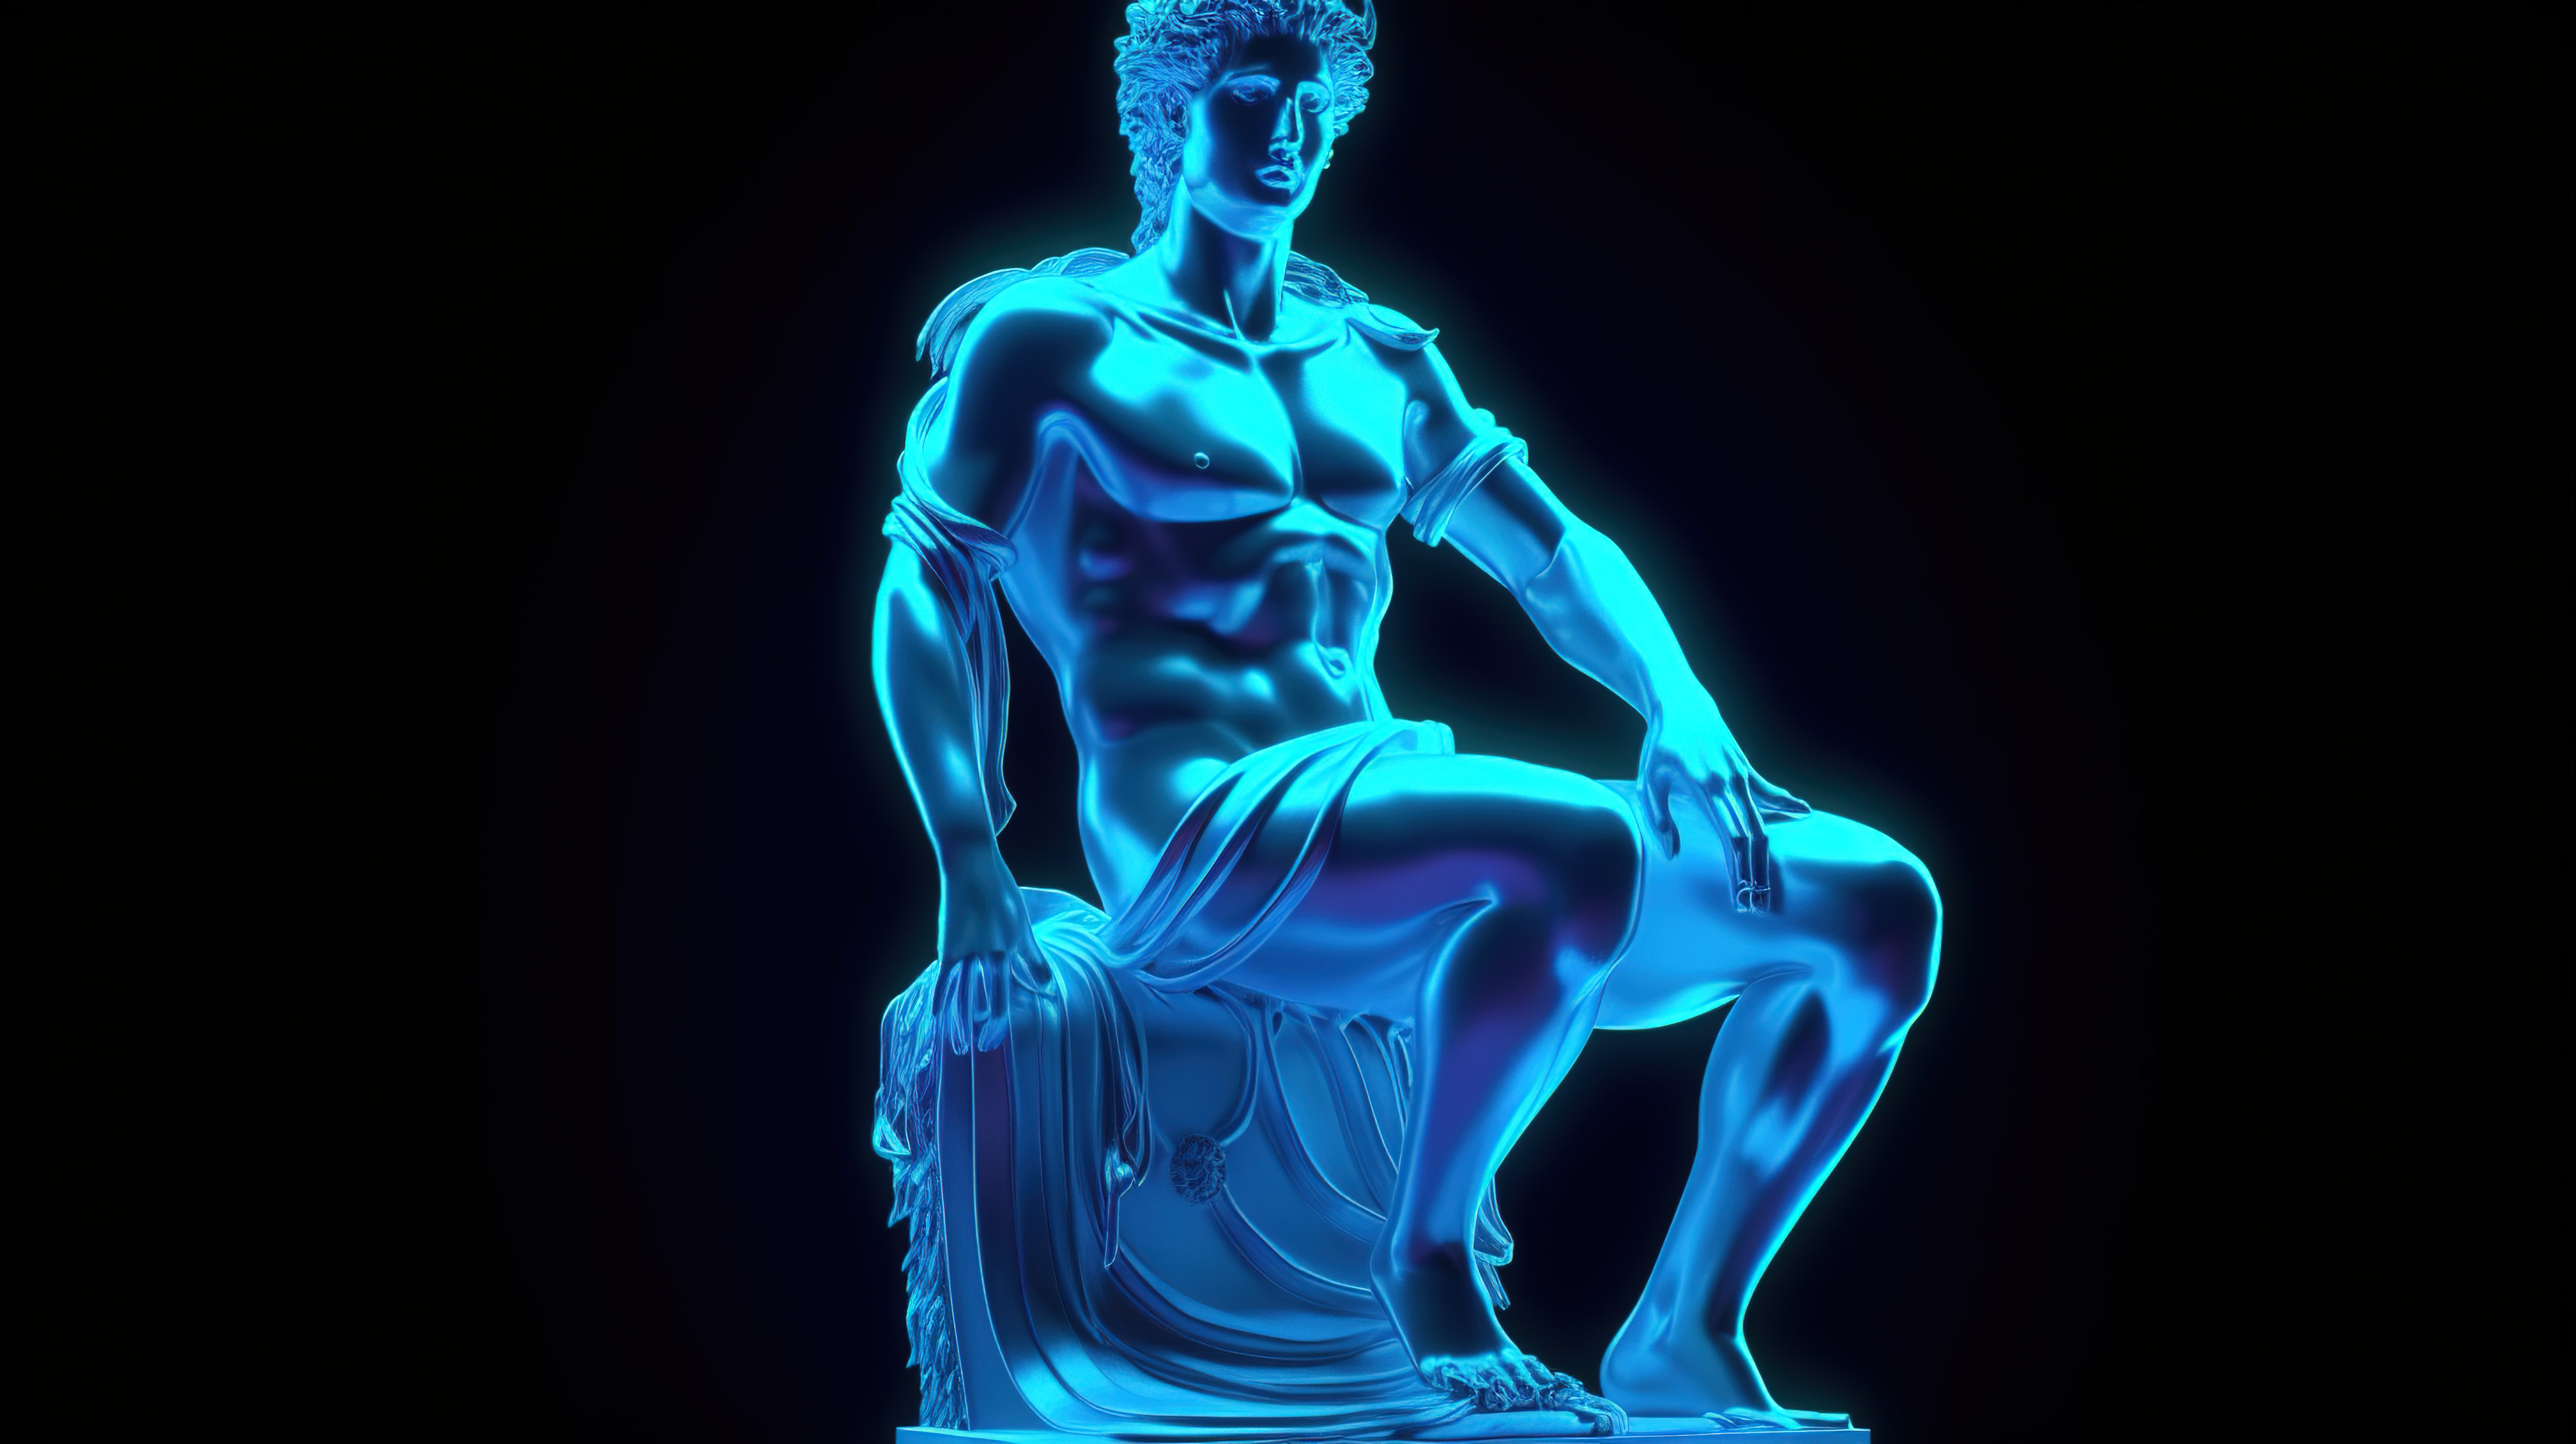 阿波罗观景台雕像在霓虹蓝色闪电 3d 渲染中发光图片